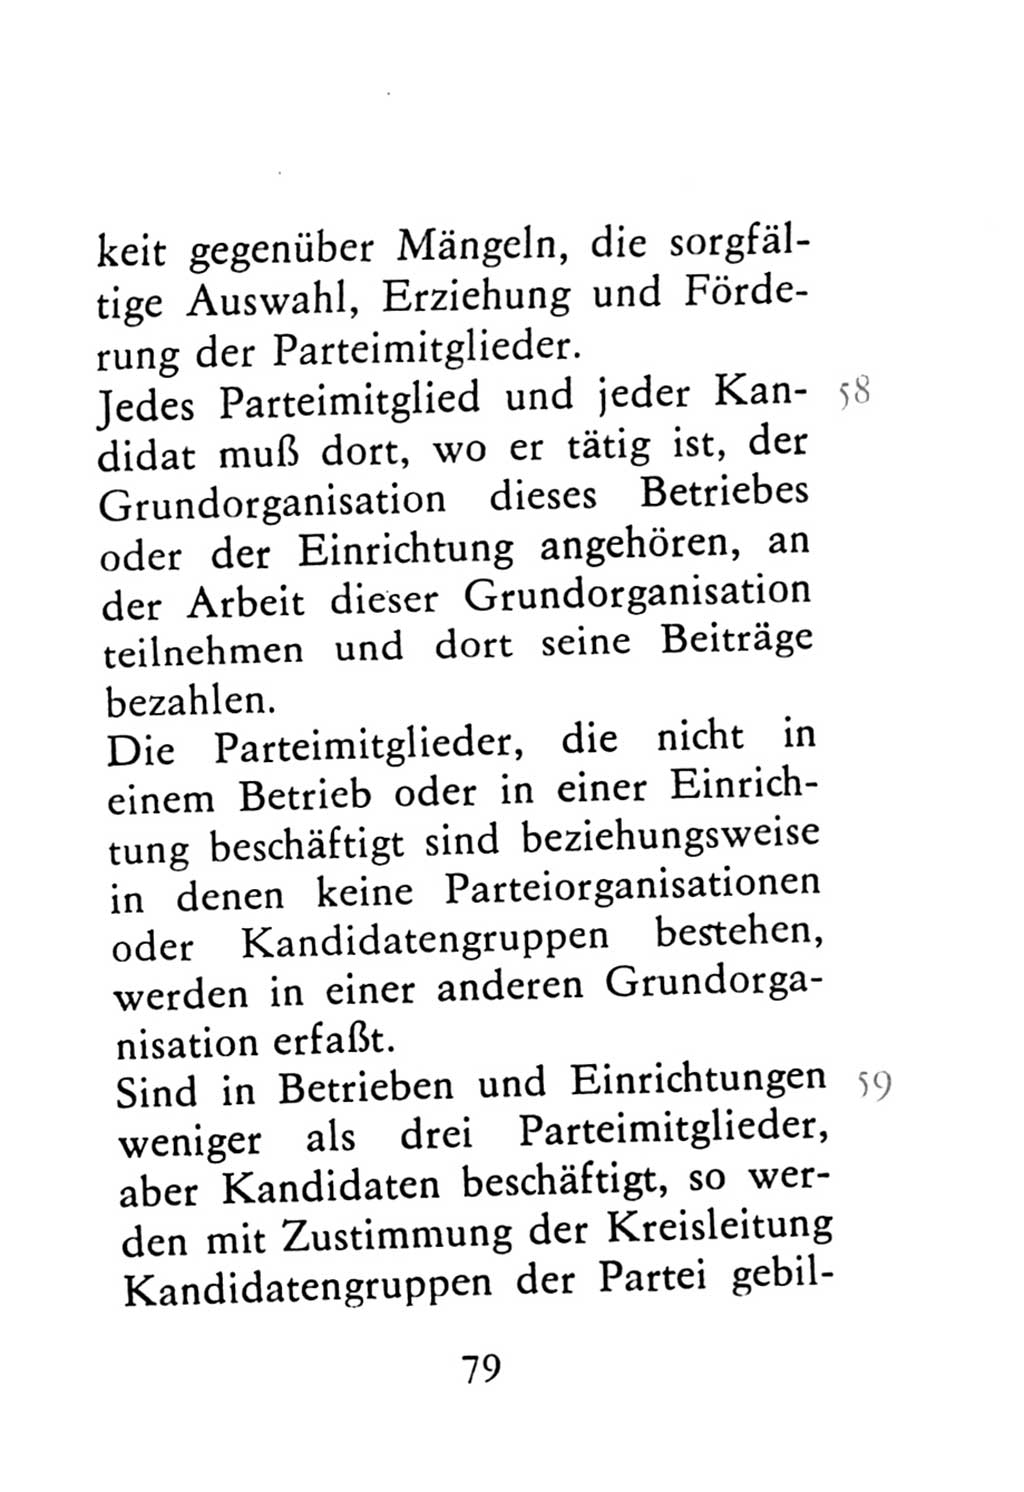 Statut der Sozialistischen Einheitspartei Deutschlands (SED) 1976, Seite 79 (St. SED DDR 1976, S. 79)